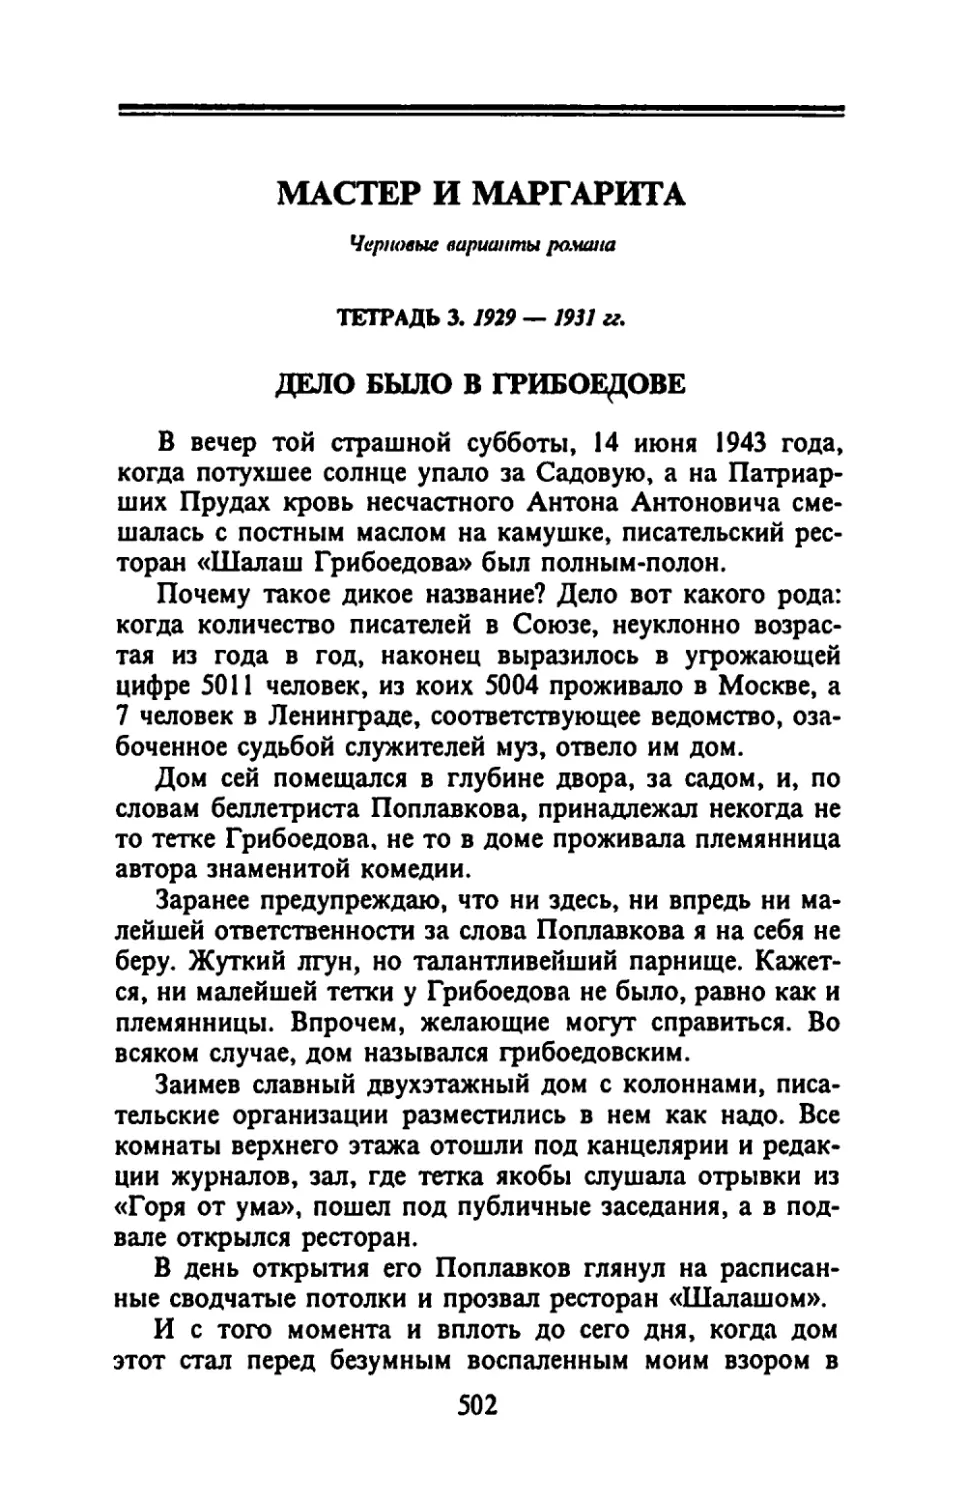 Тетрадь 3. 1929 - 1931 гг.